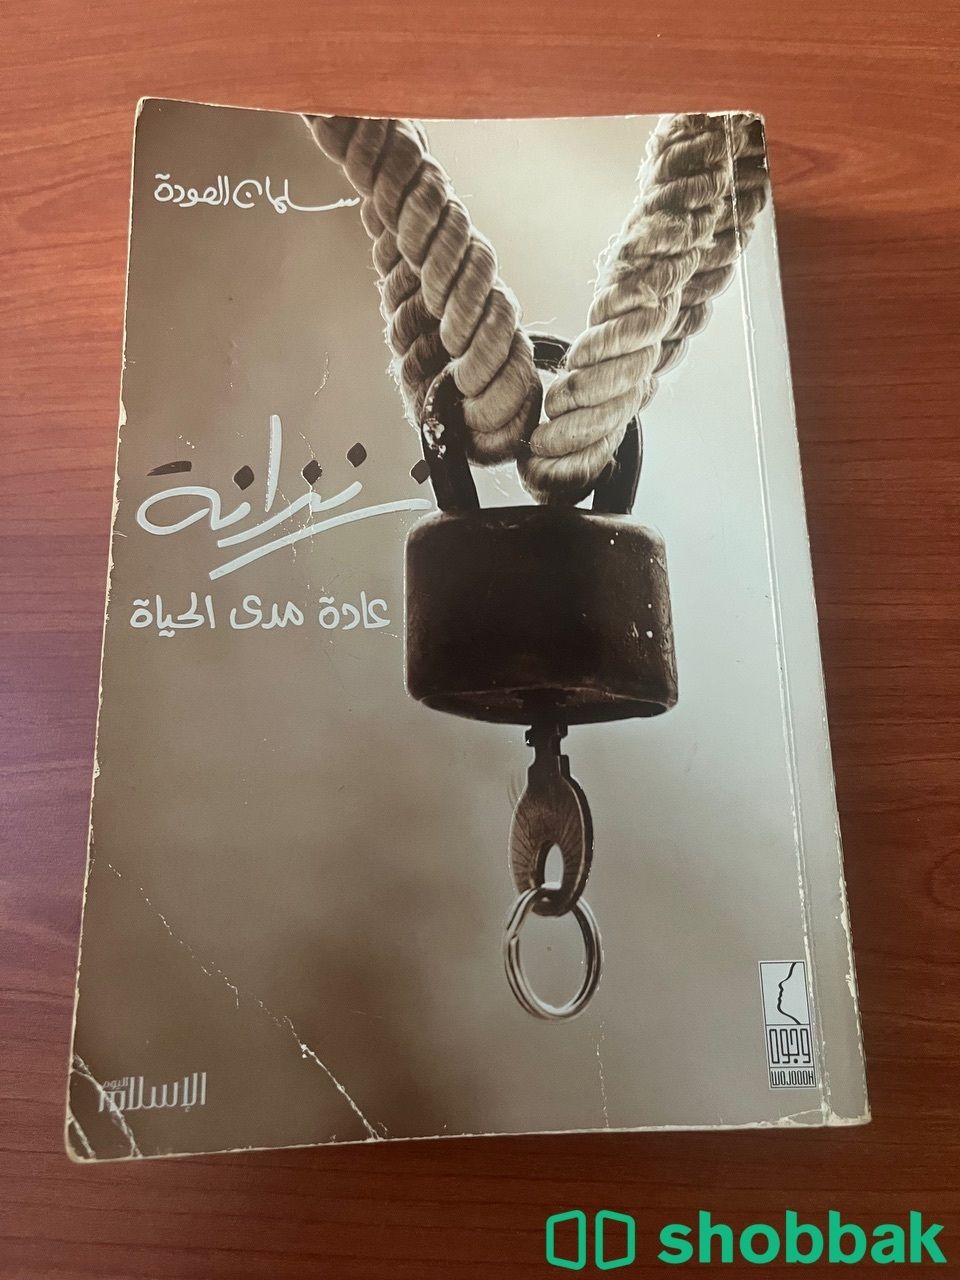 كتب وروايات متنوعة للبيع  Shobbak Saudi Arabia